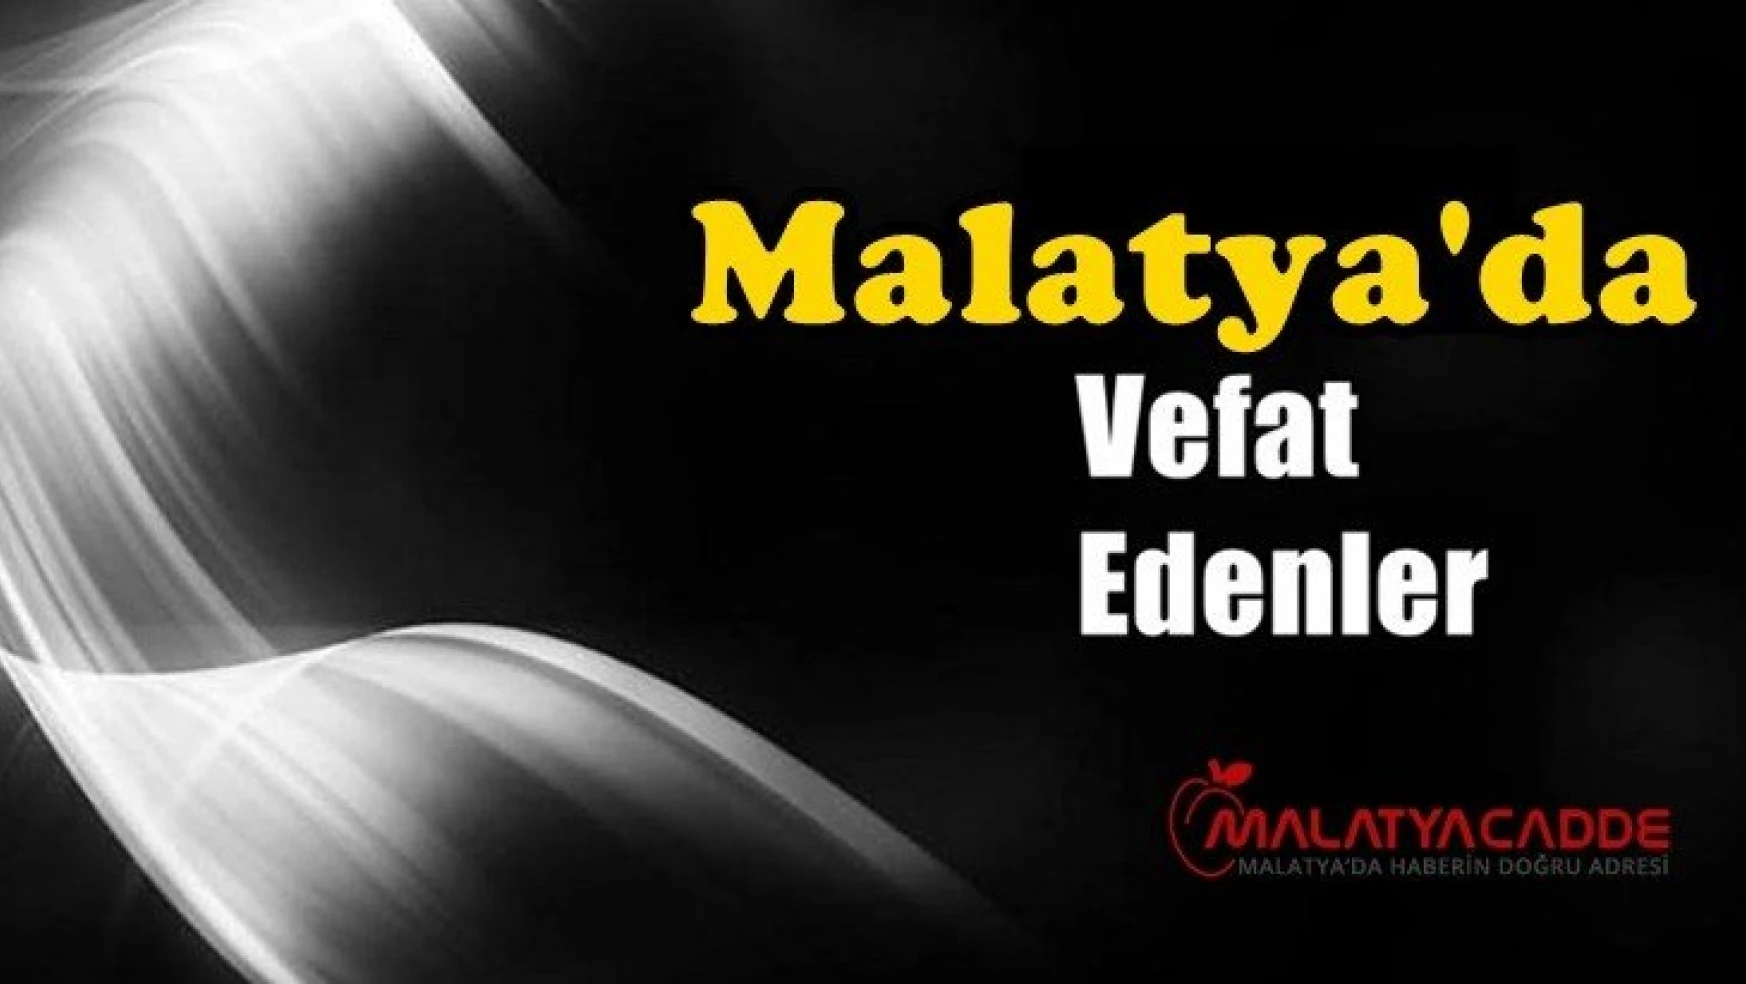 Malatya'da Bugün 24 Kişi Vefat Etti